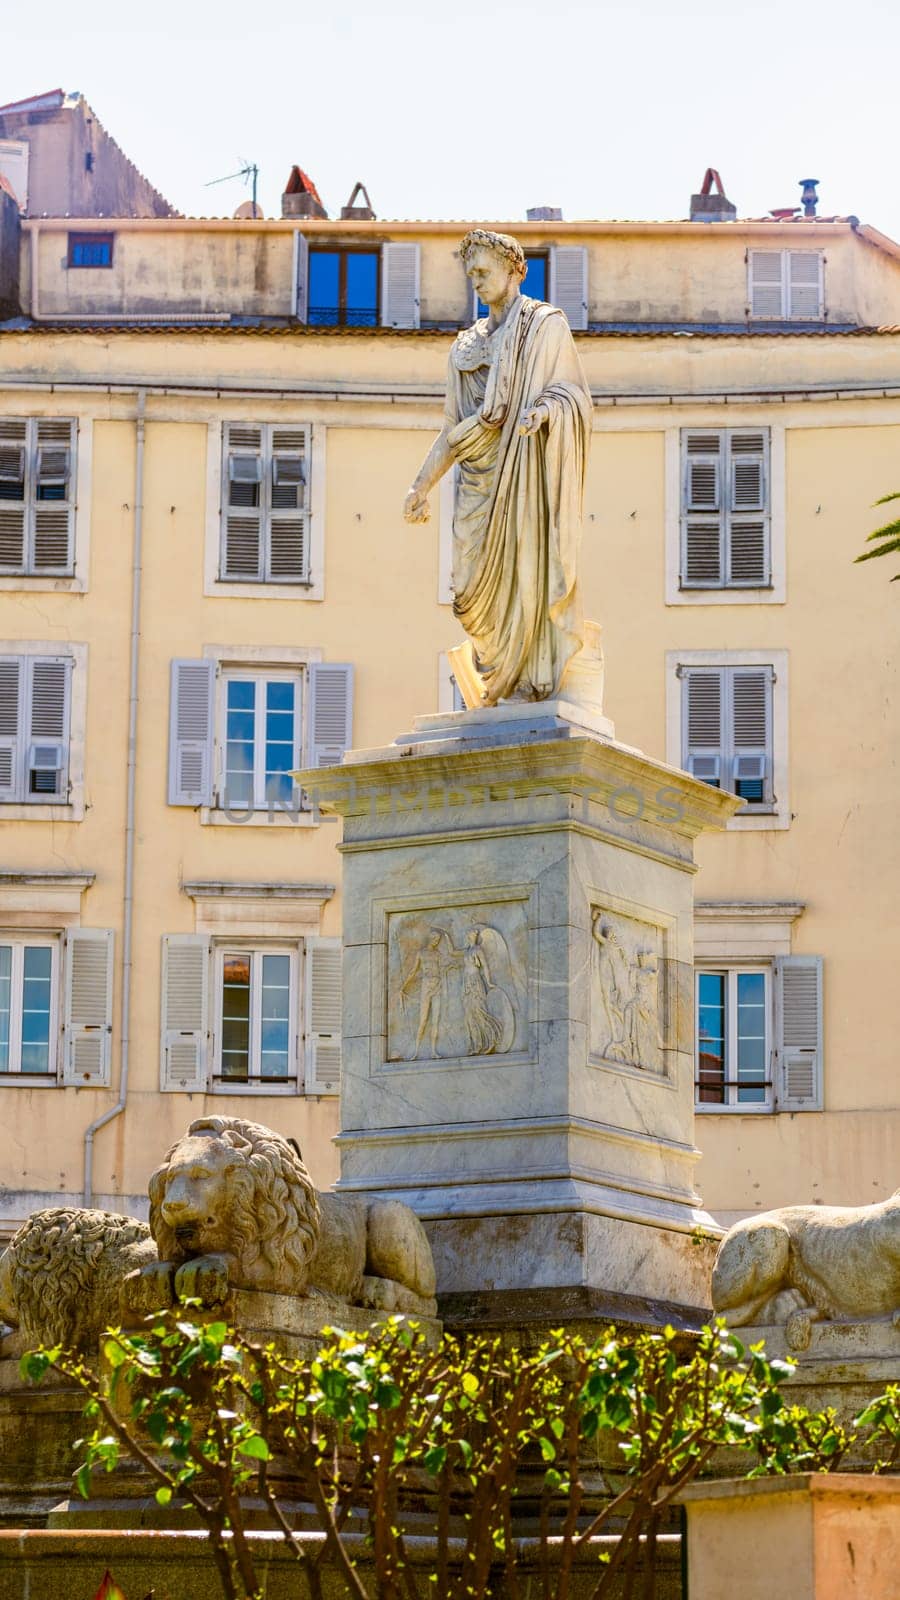 Foch Square and Bonaparte statue in Ajaccio, Corsica, France